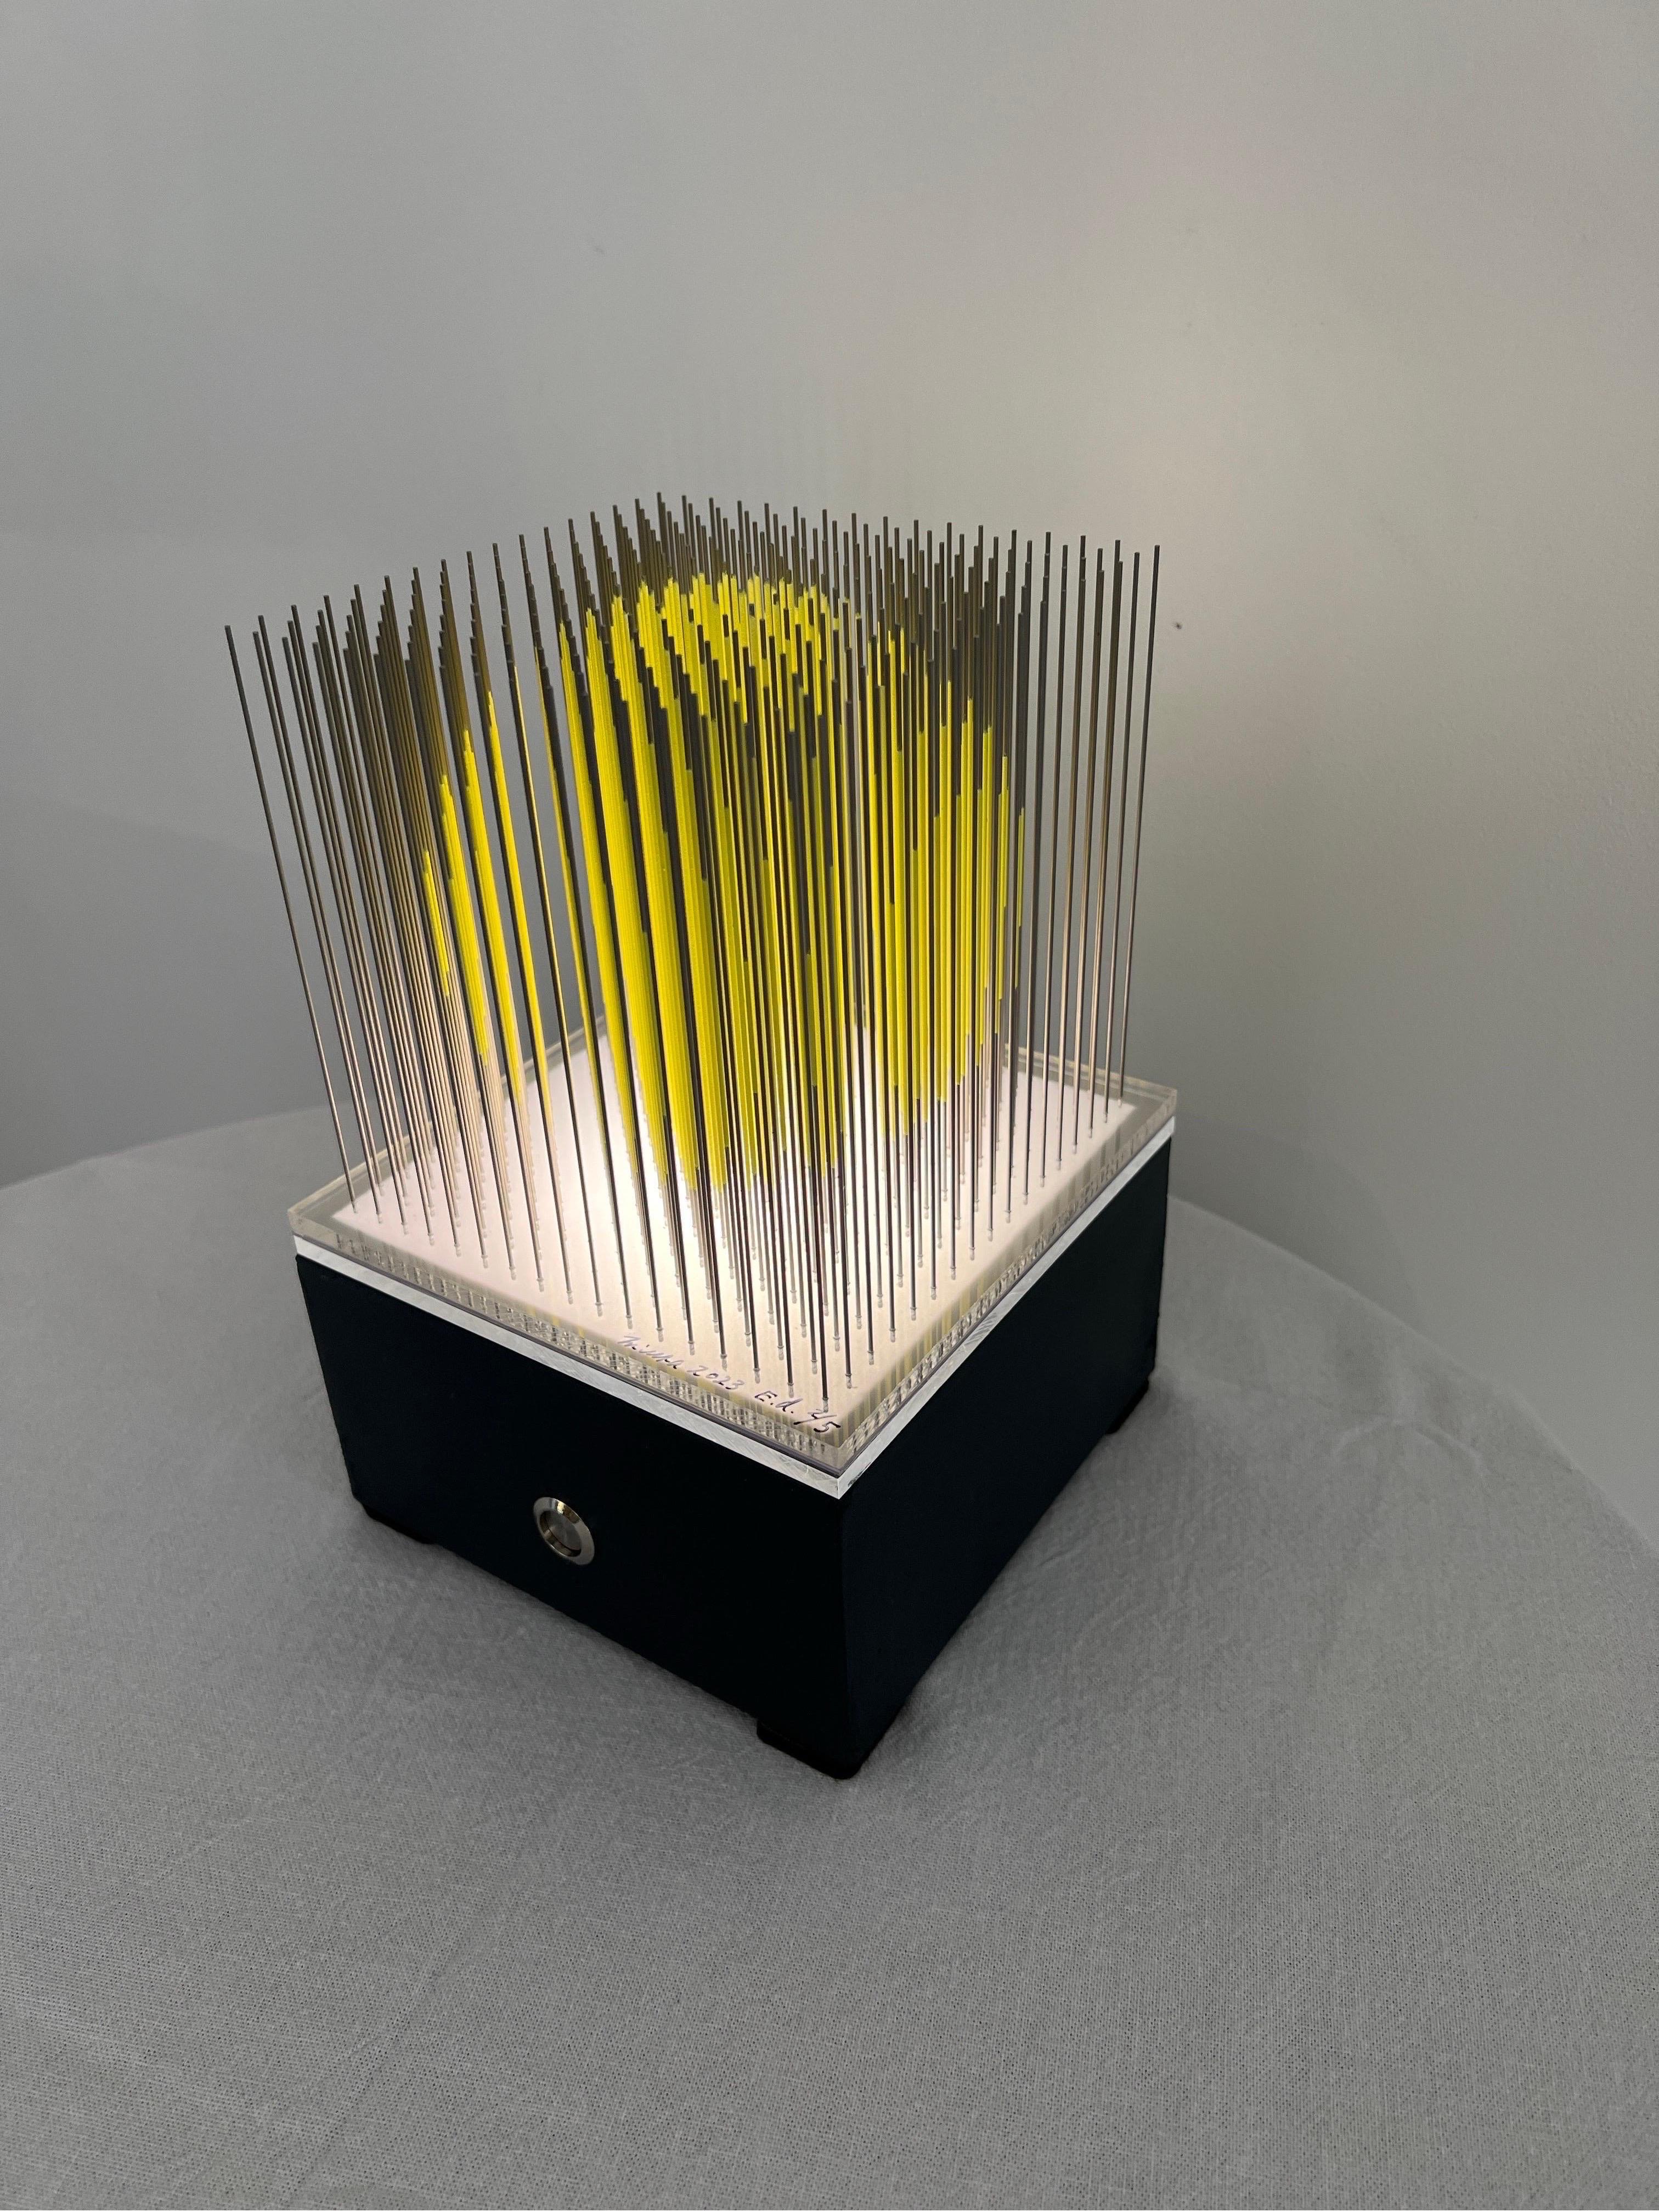 Acryl auf Edelstahlnadeln, vollständig von Hand gefertigt, auf geführtem Sockel (nicht im Lieferumfang enthalten).
Yoshiyuki Miura ist ein Meister der kinetischen Kunst (Op Art) und ein begehrter Sammler. Dieses Stück wird durch einen LED-Sockel